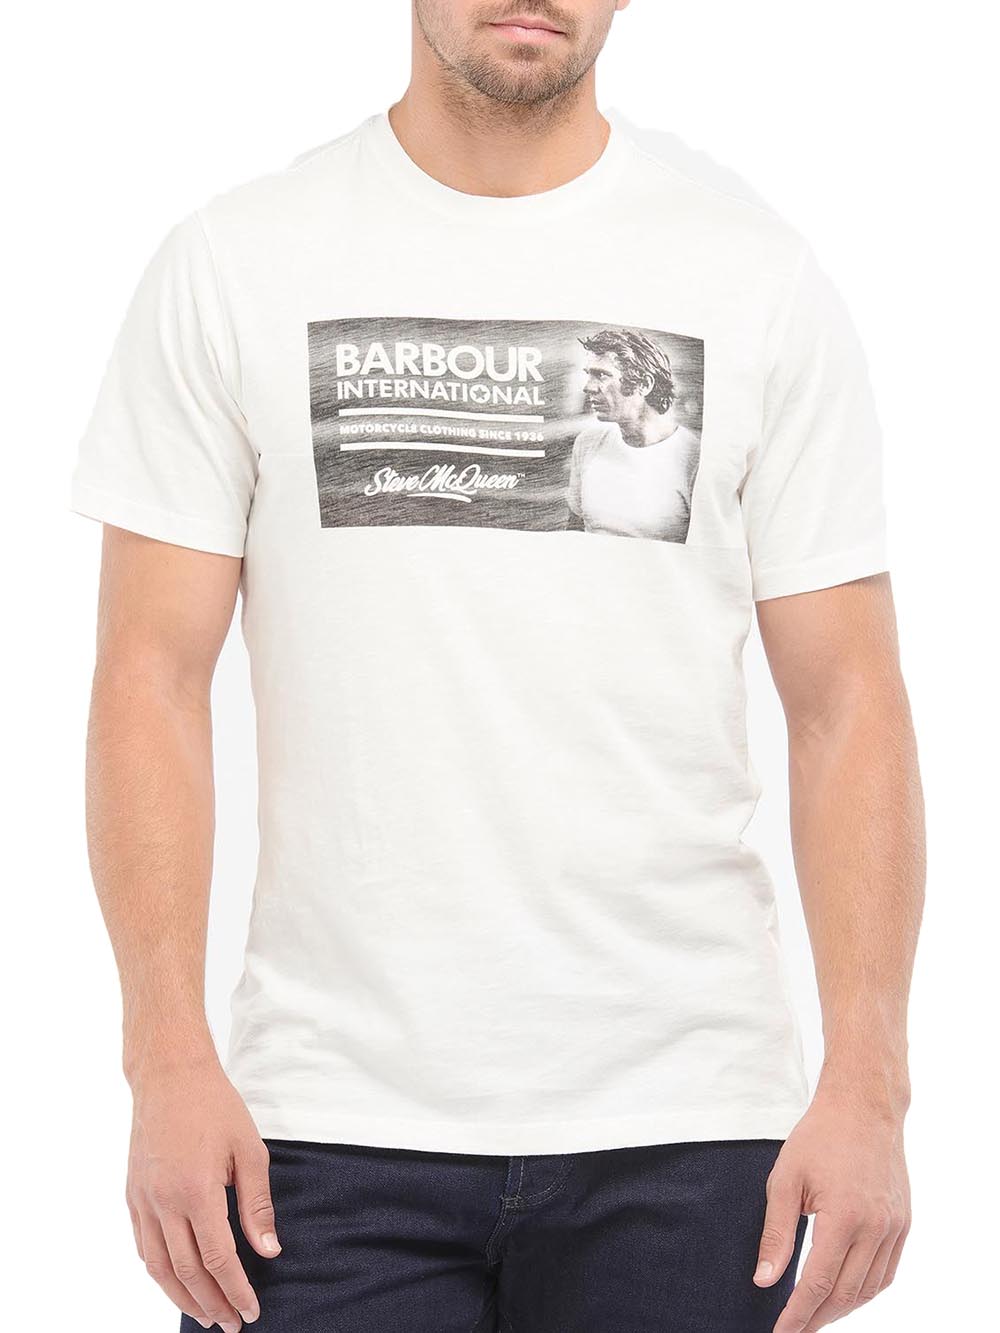 BARBOUR T-shirt Uomo Panna